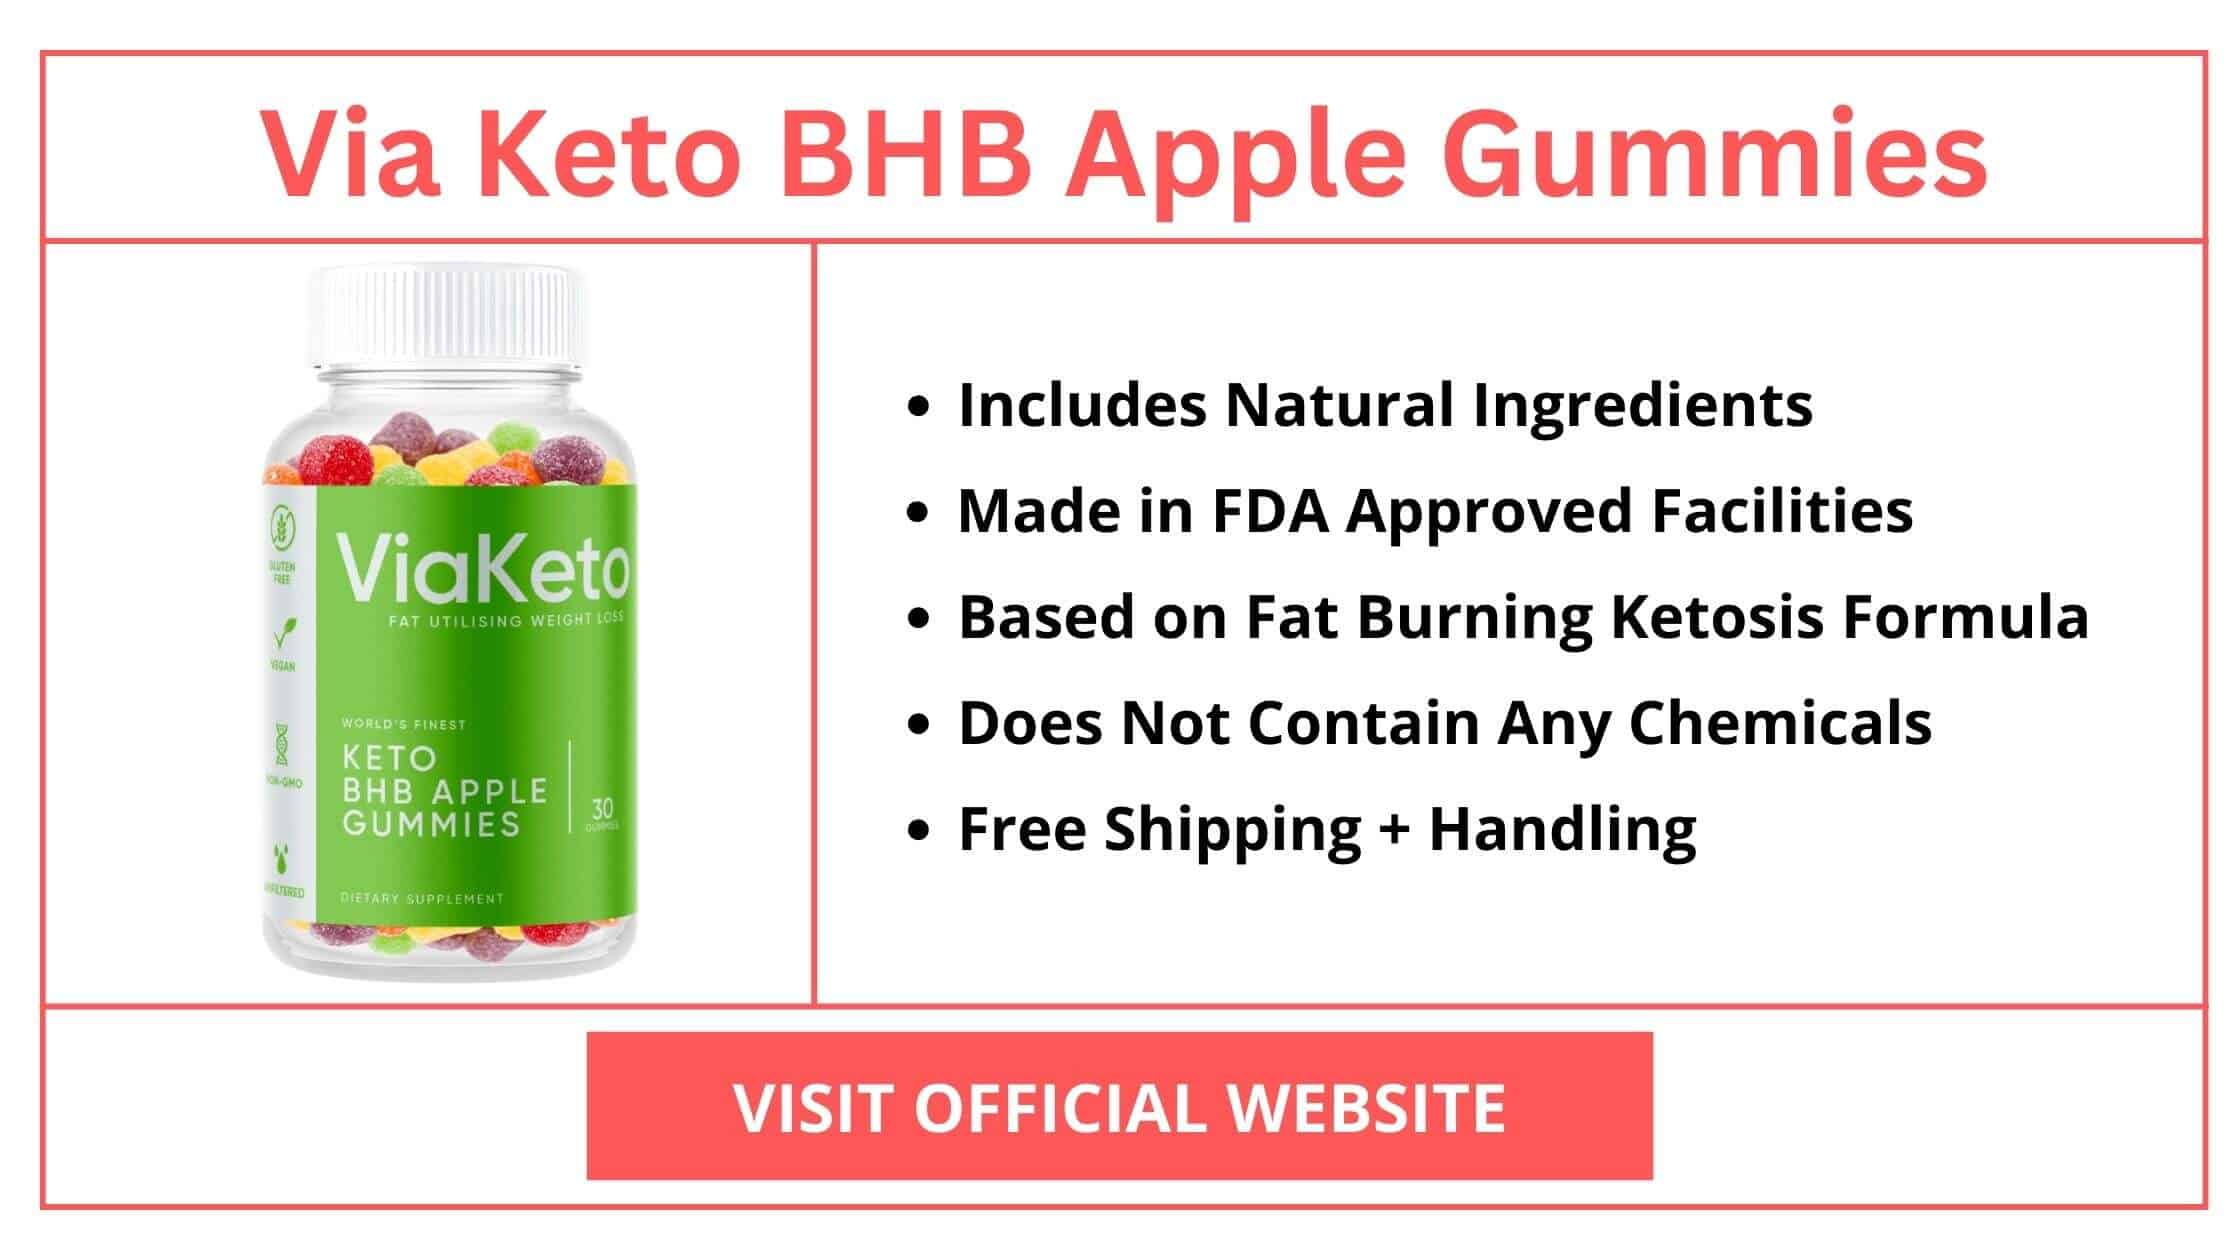 Via Keto BHB Apple Gummies Supplement